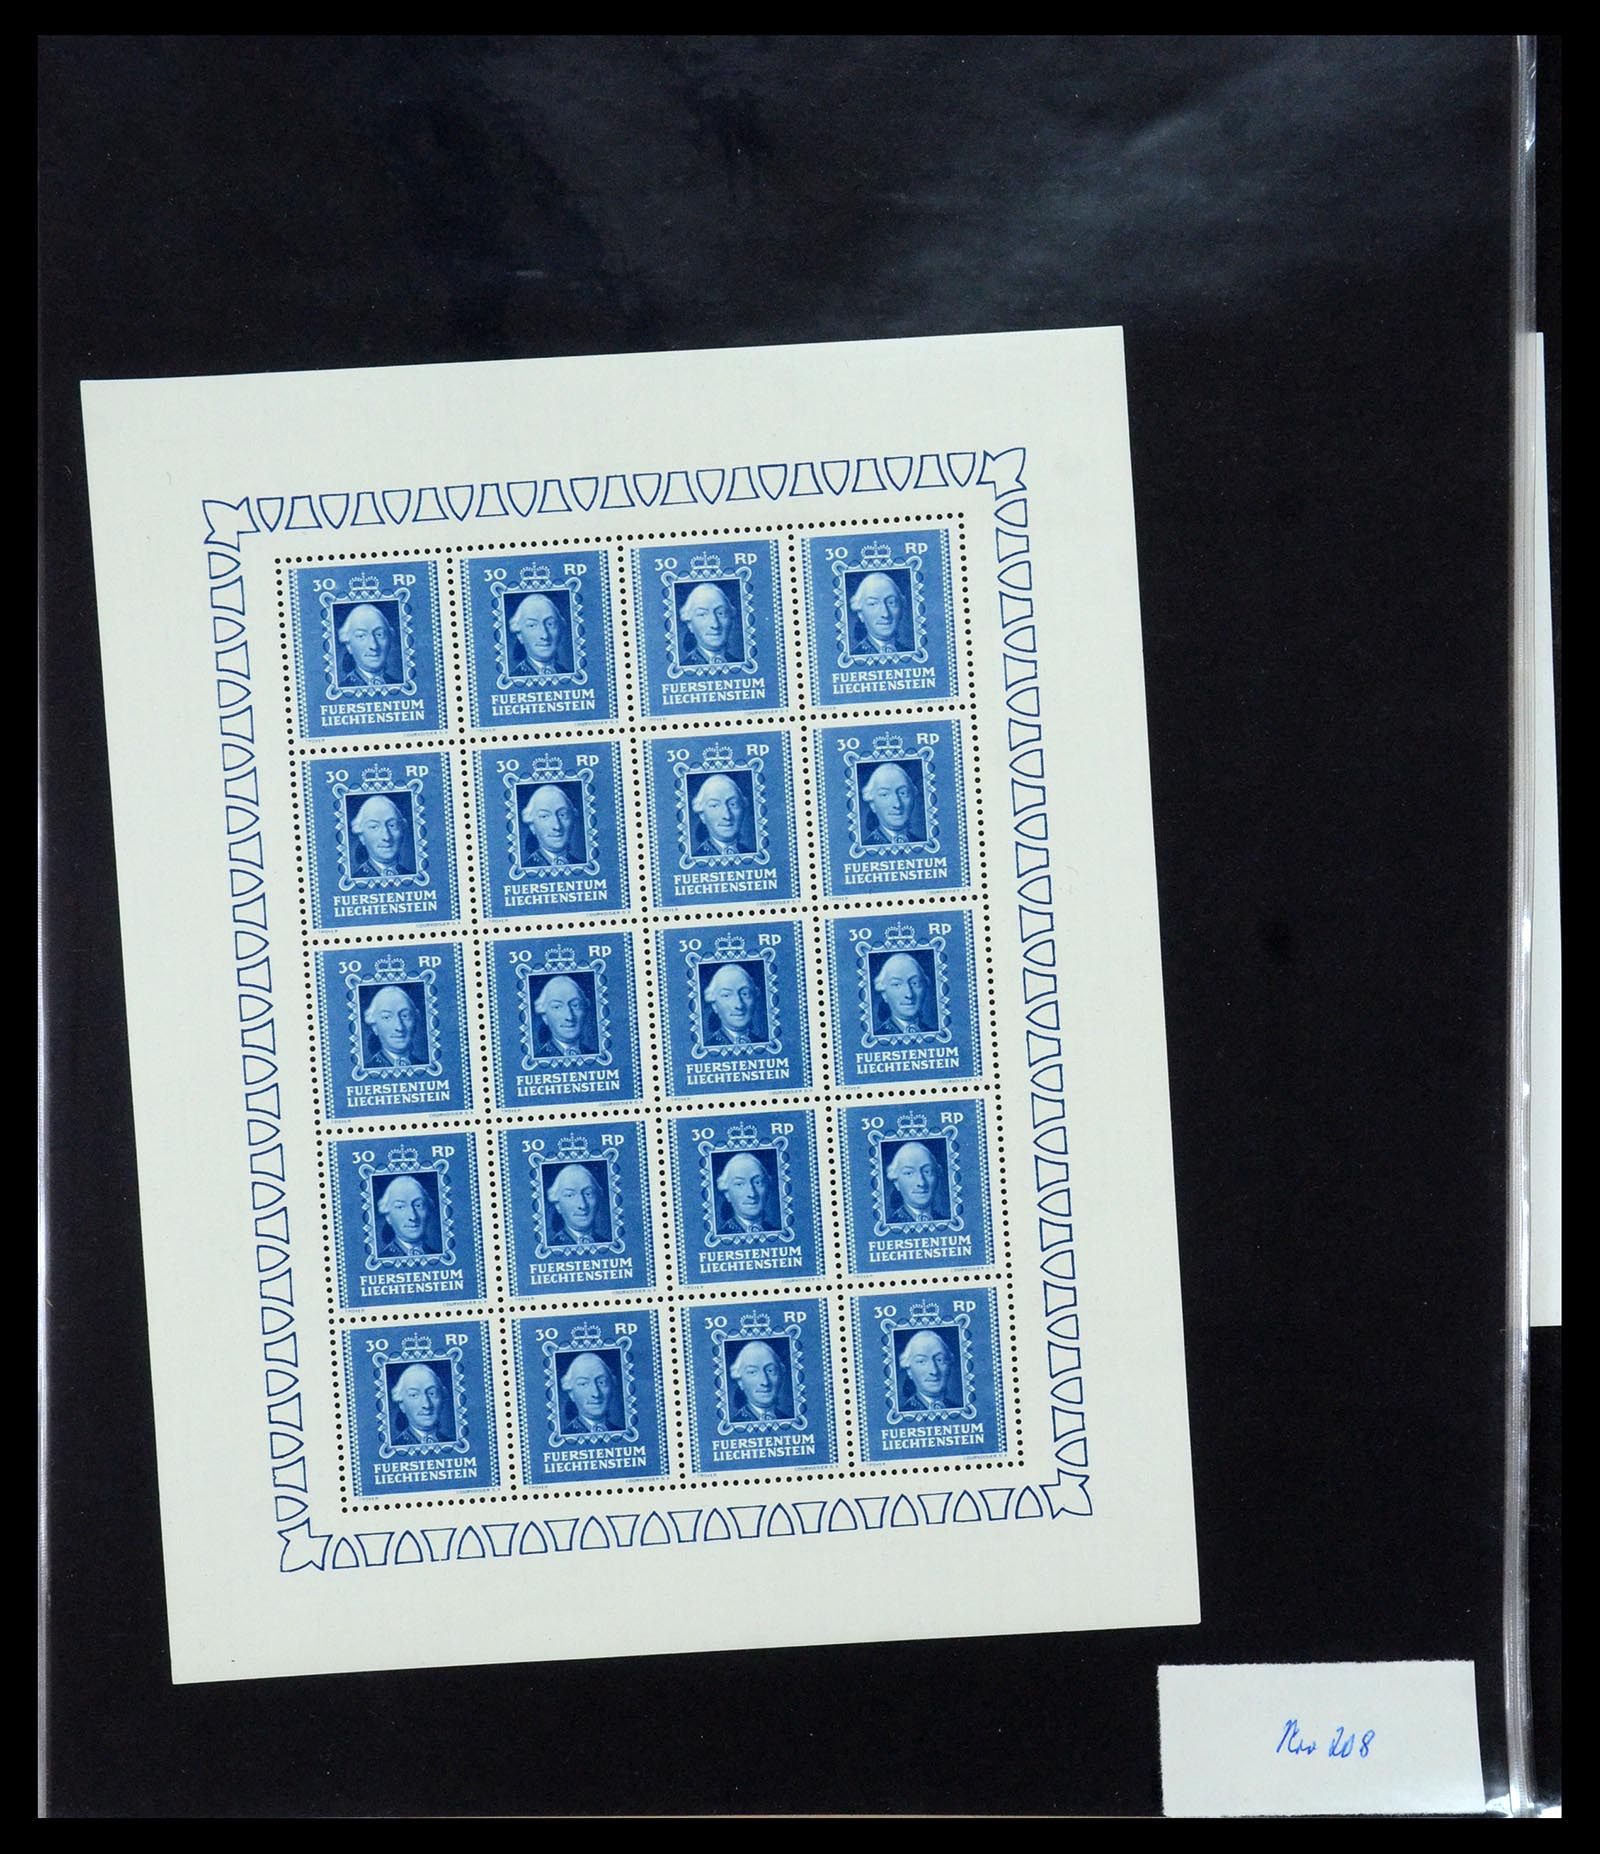 36280 023 - Stamp collection 36280 Liechtenstein souvenir sheets and sheetlets 1934-